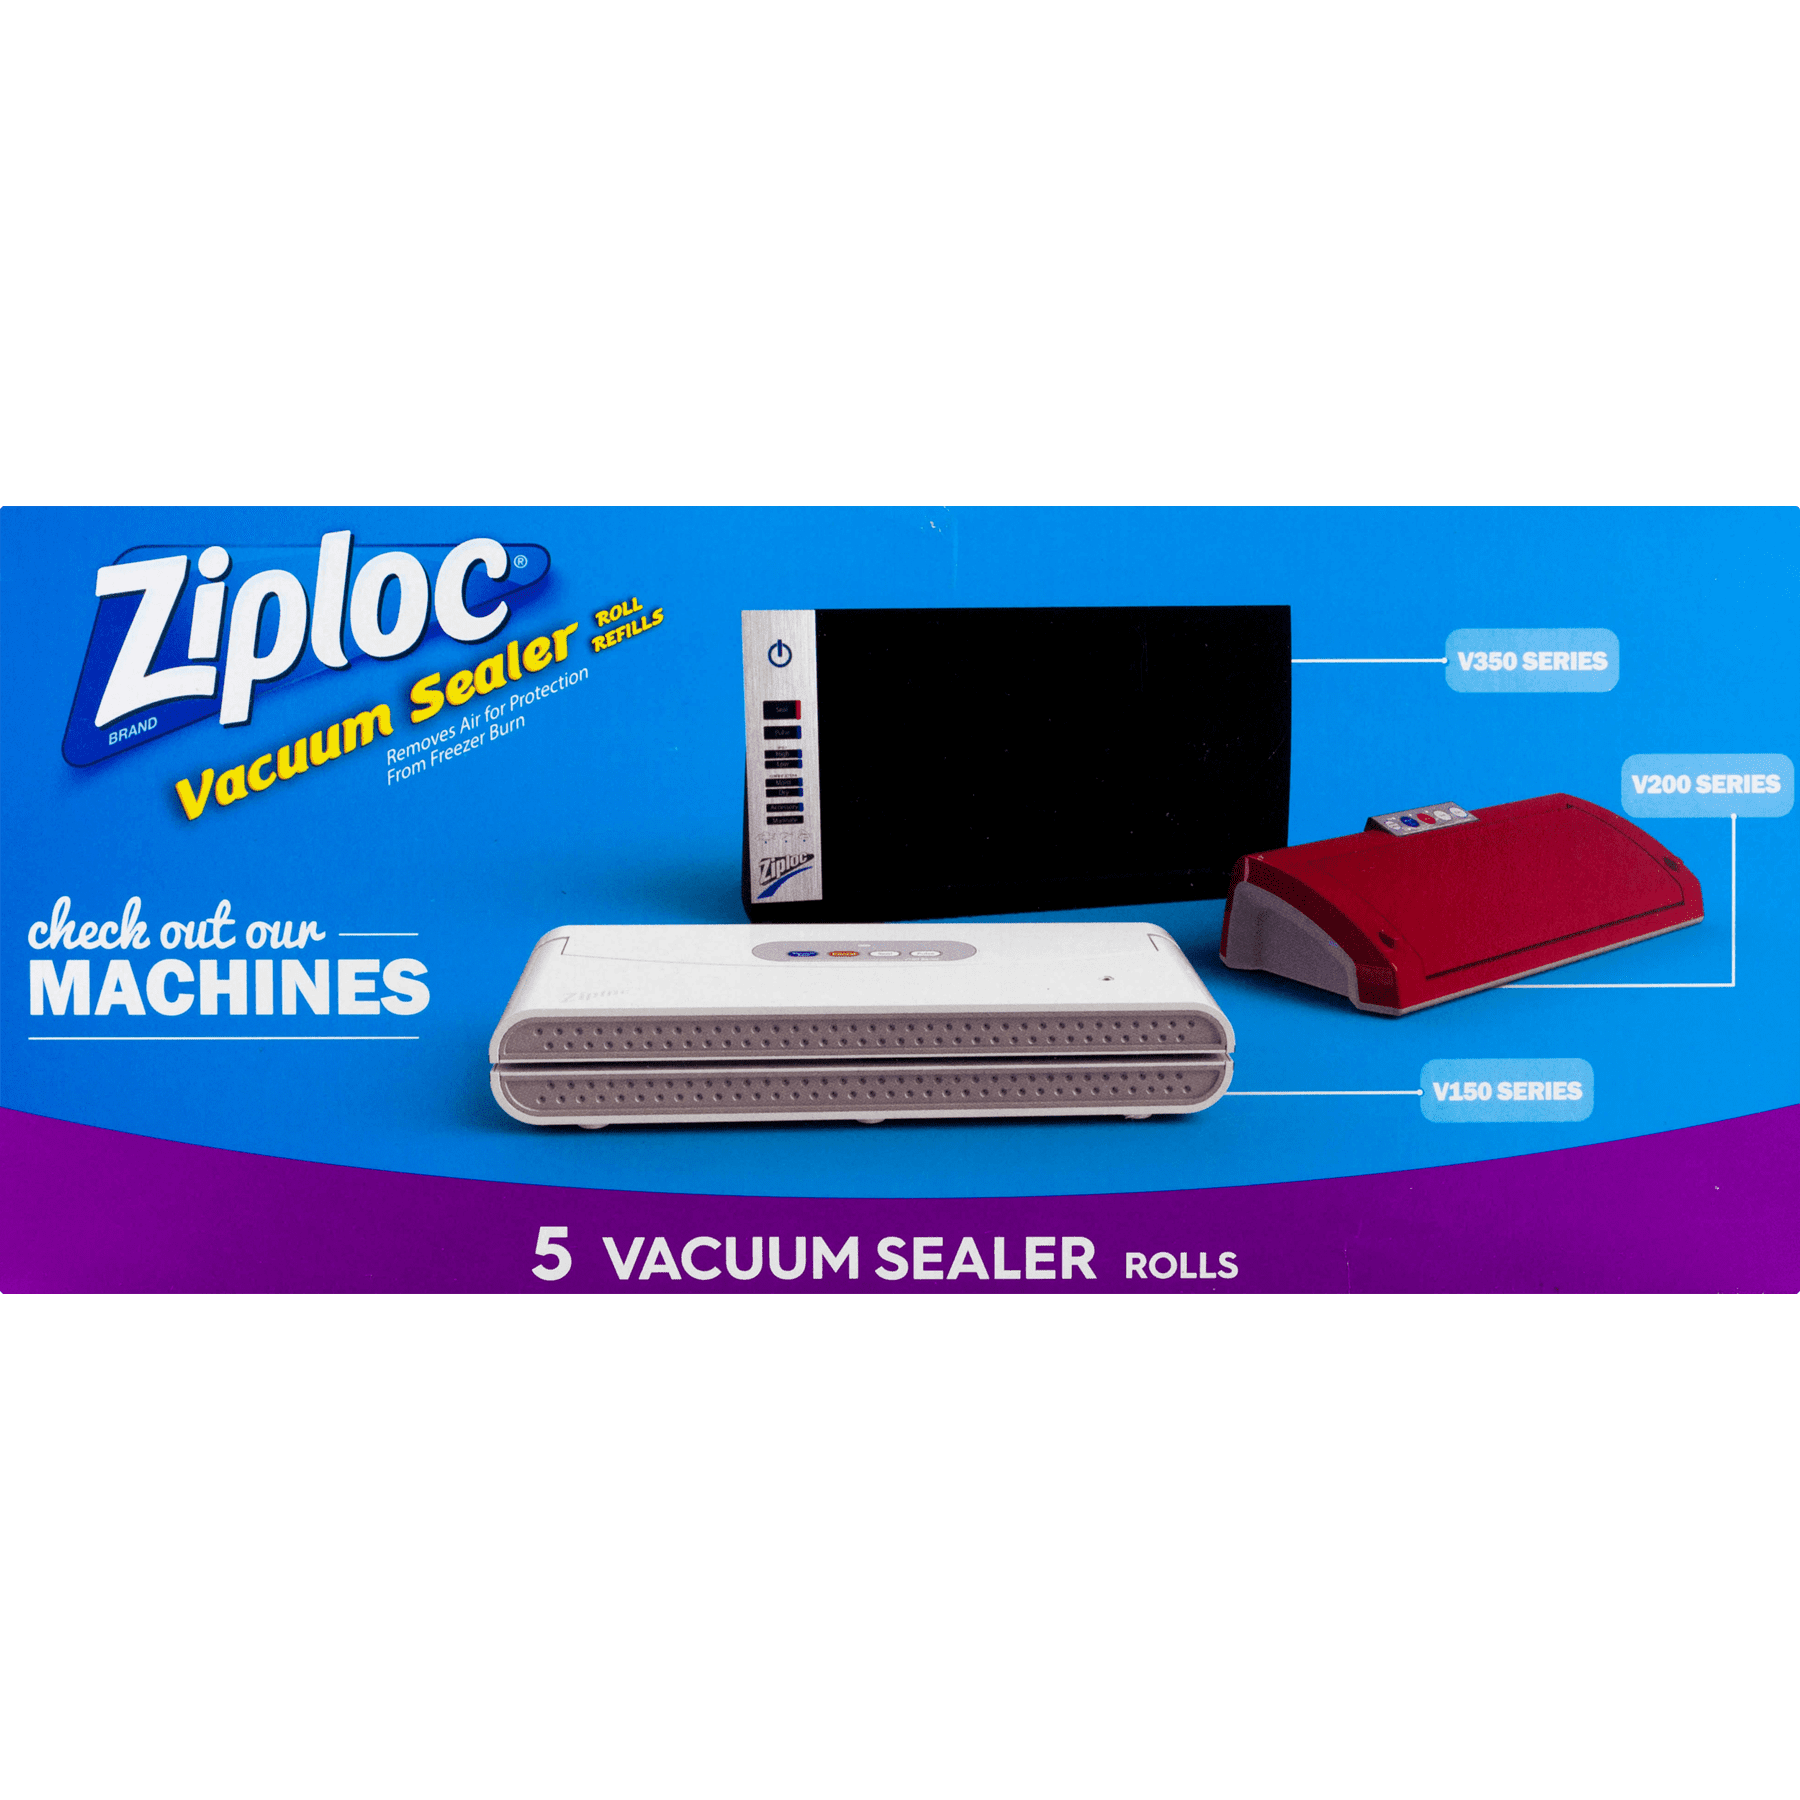 Ziploc V205 Vacuum Sealer, Red